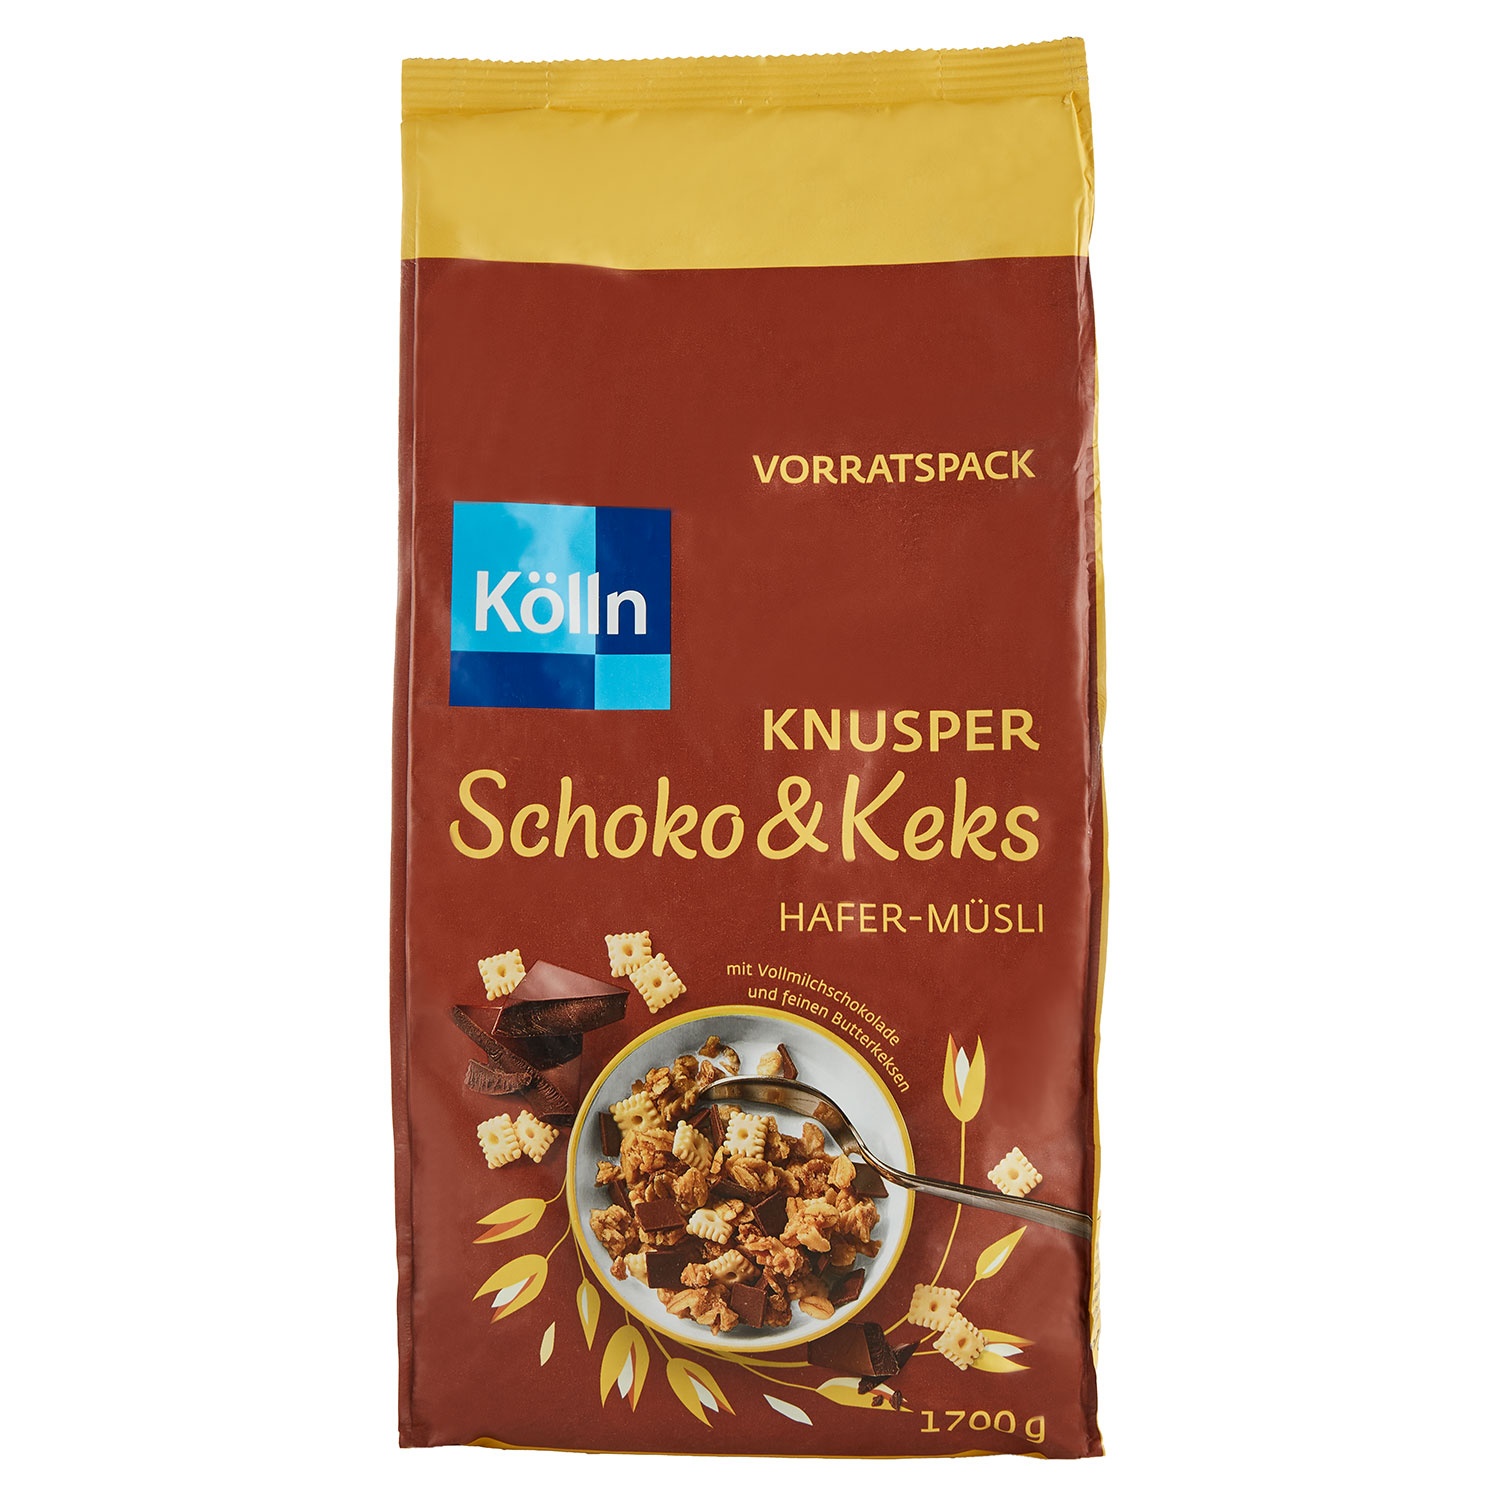 KÖLLN Hafer-Müsli Knusper Schoko & Keks Vorratspack 1,7 kg